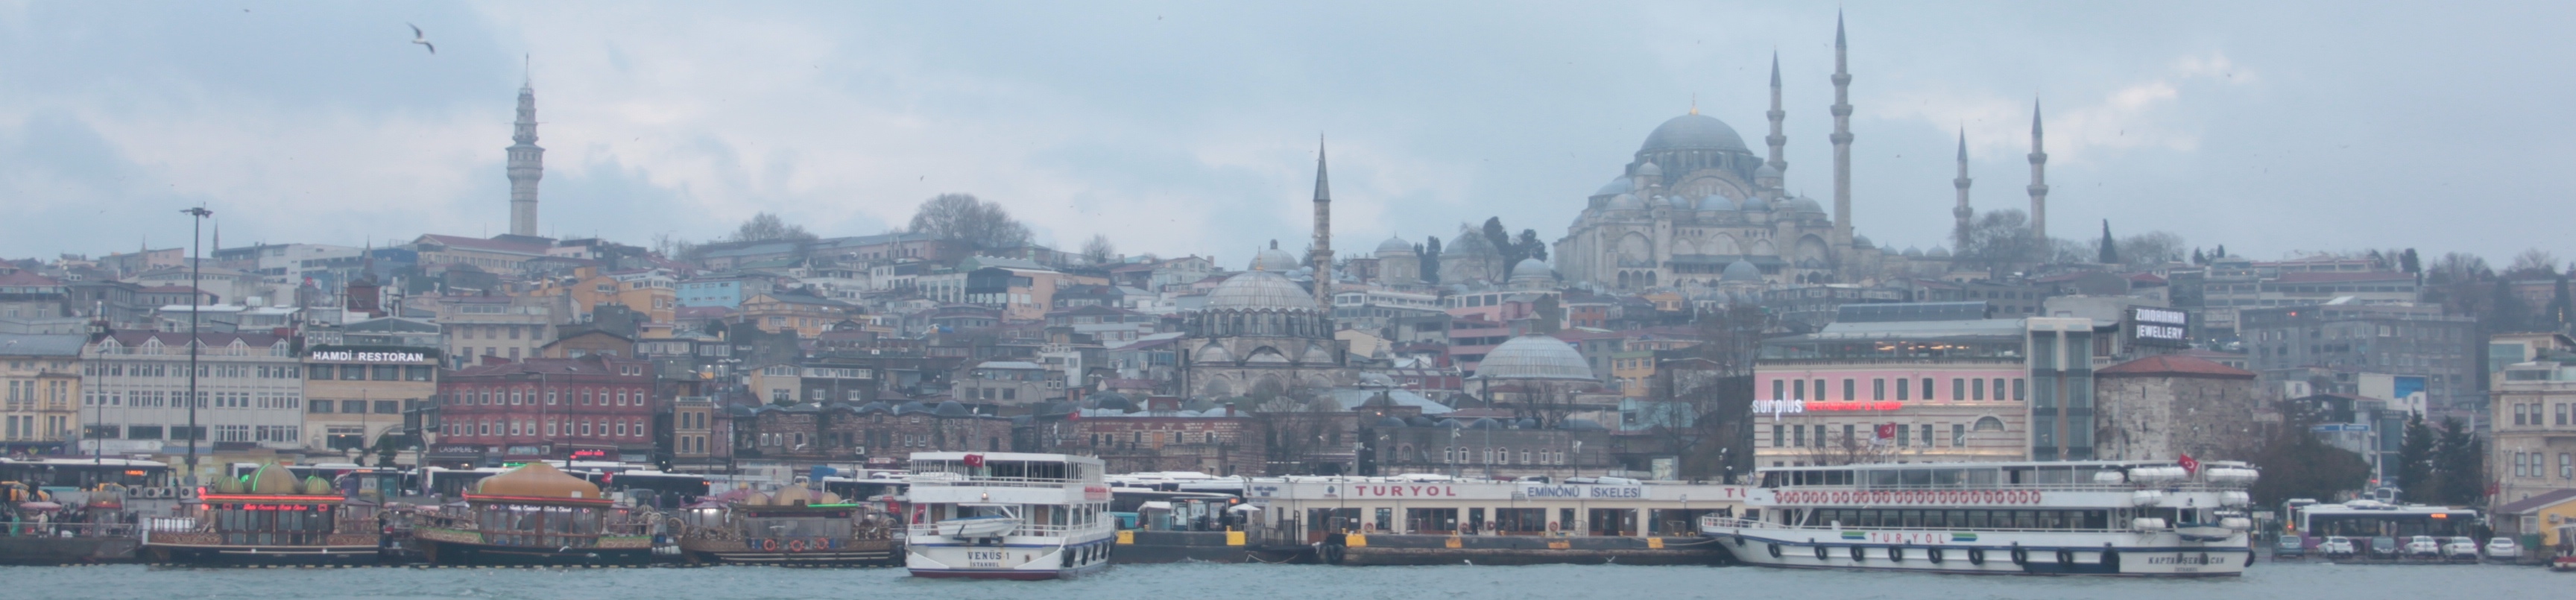 Istanbul_B.jpg